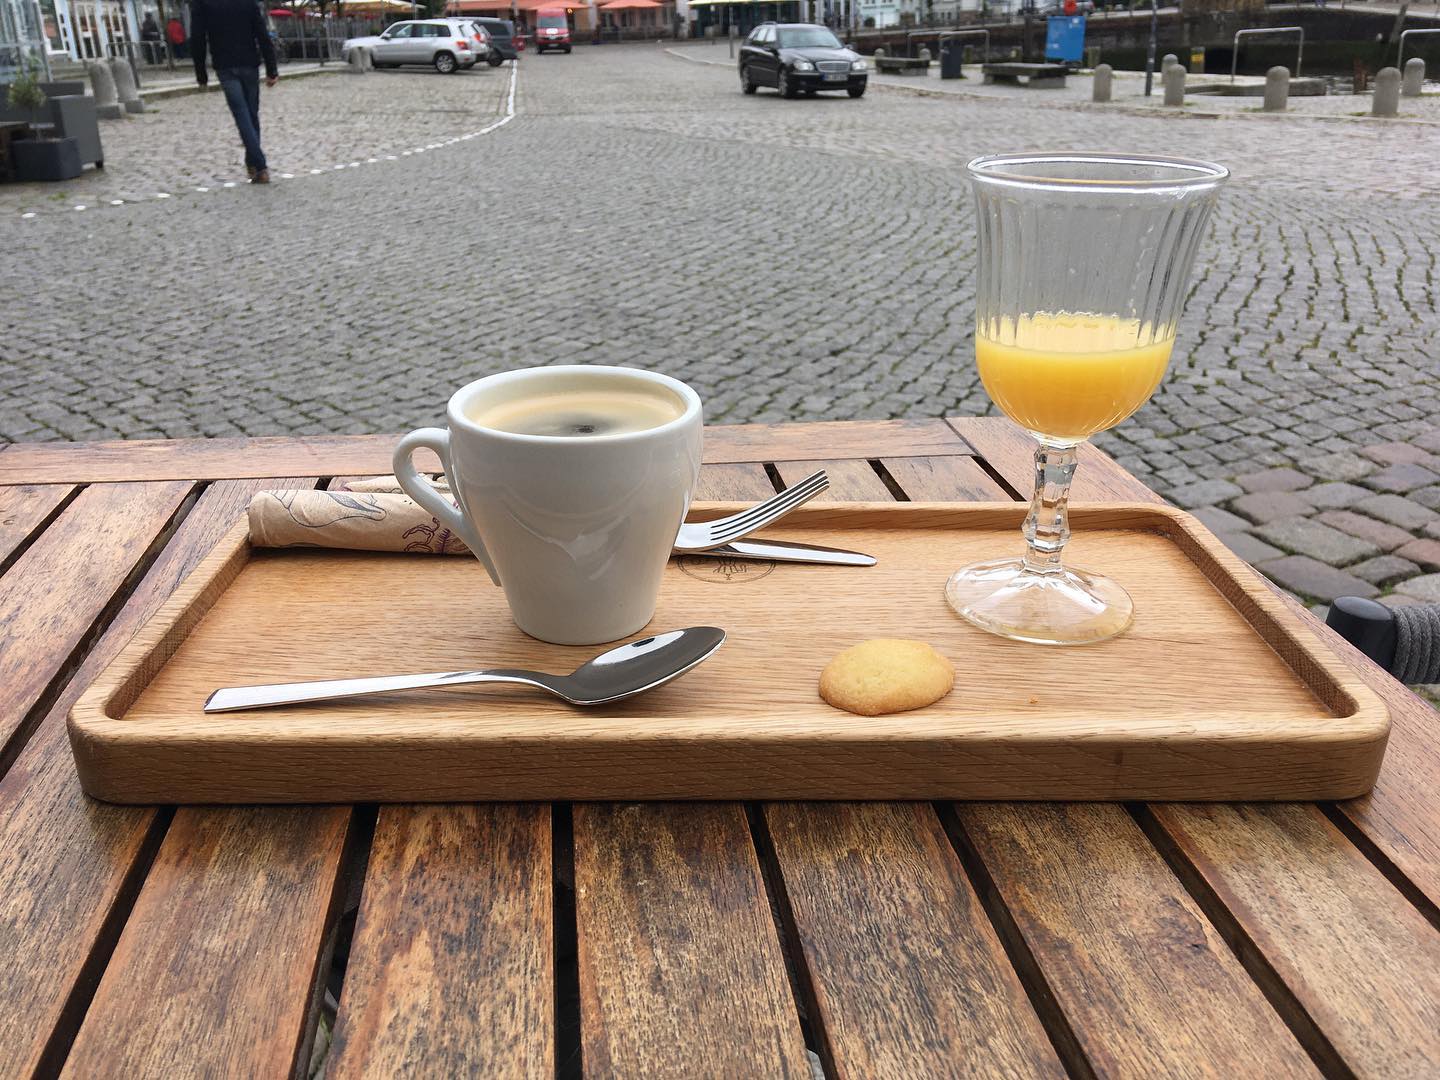 Spontan heute Morgen entschlossen zum Frühstück nach Husum zu fahren. #husum #coffee #nf #nordfriesland #hafenkontor #frühstücken